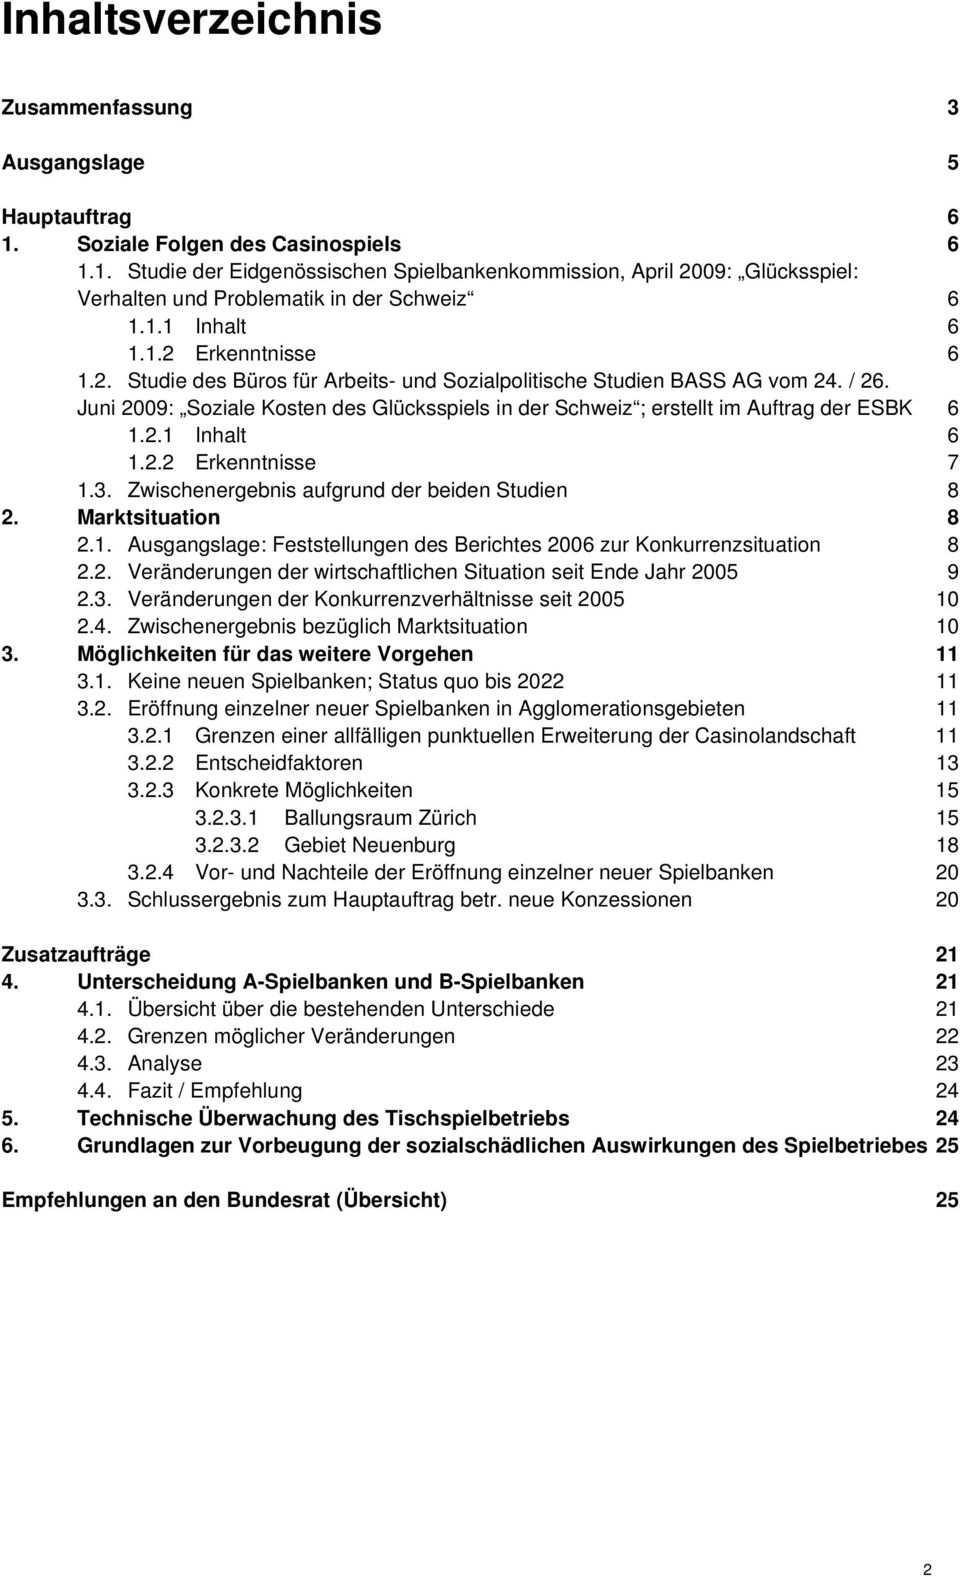 Juni 2009: Soziale Kosten des Glücksspiels in der Schweiz ; erstellt im Auftrag der ESBK 6 1.2.1 Inhalt 6 1.2.2 Erkenntnisse 7 1.3. Zwischenergebnis aufgrund der beiden Studien 8 2.